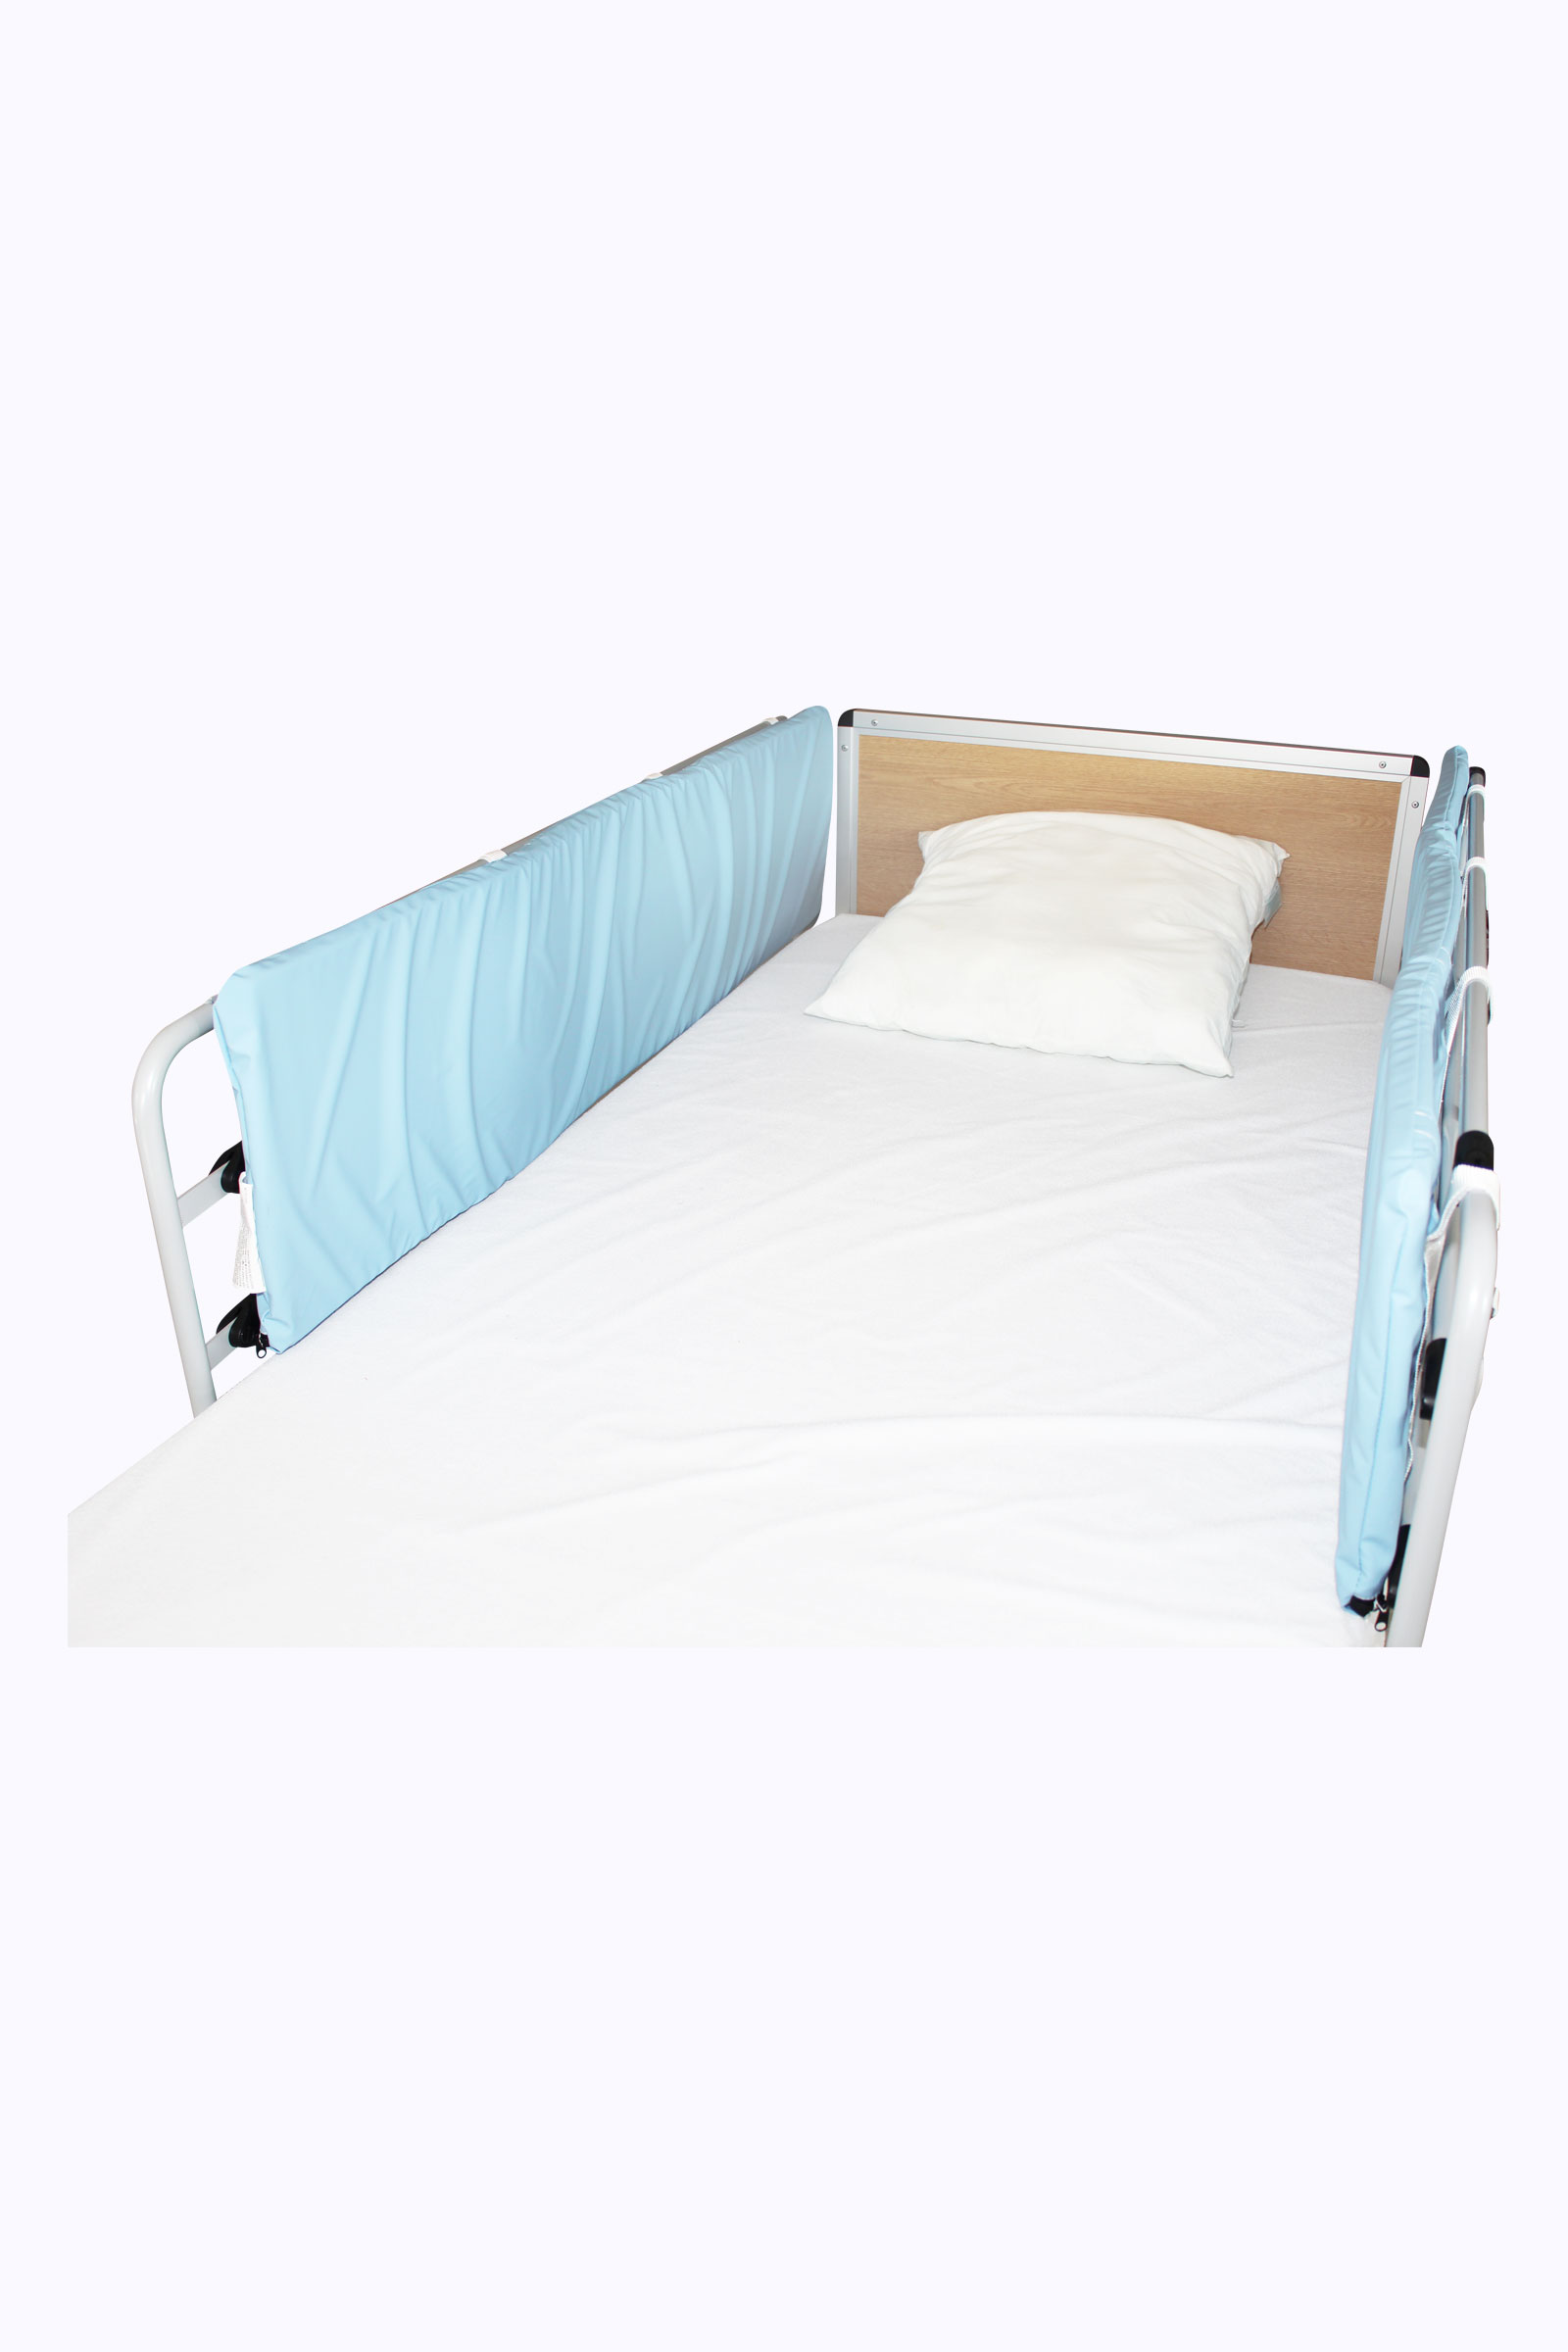 Protection mousse pour barrière de lit